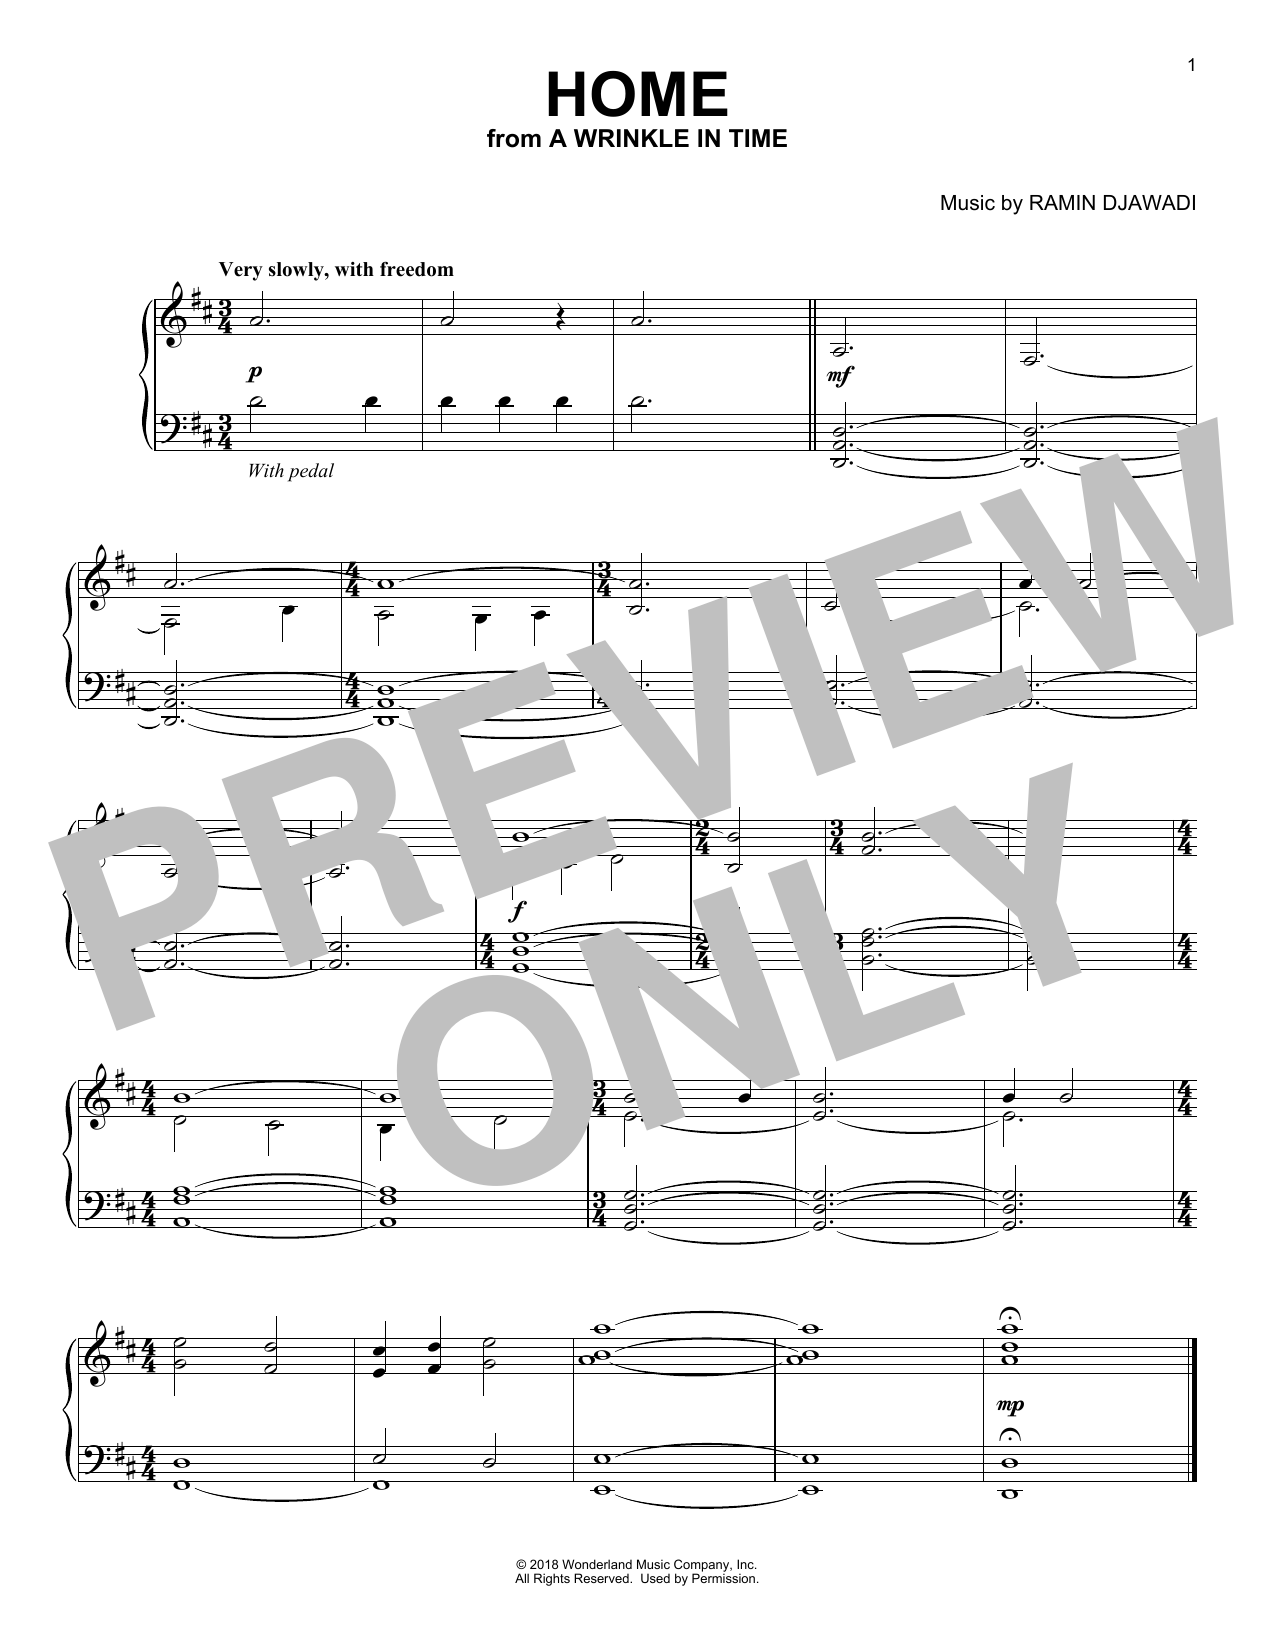 Ramin Djawadi Home Sheet Music Notes & Chords for Easy Piano - Download or Print PDF